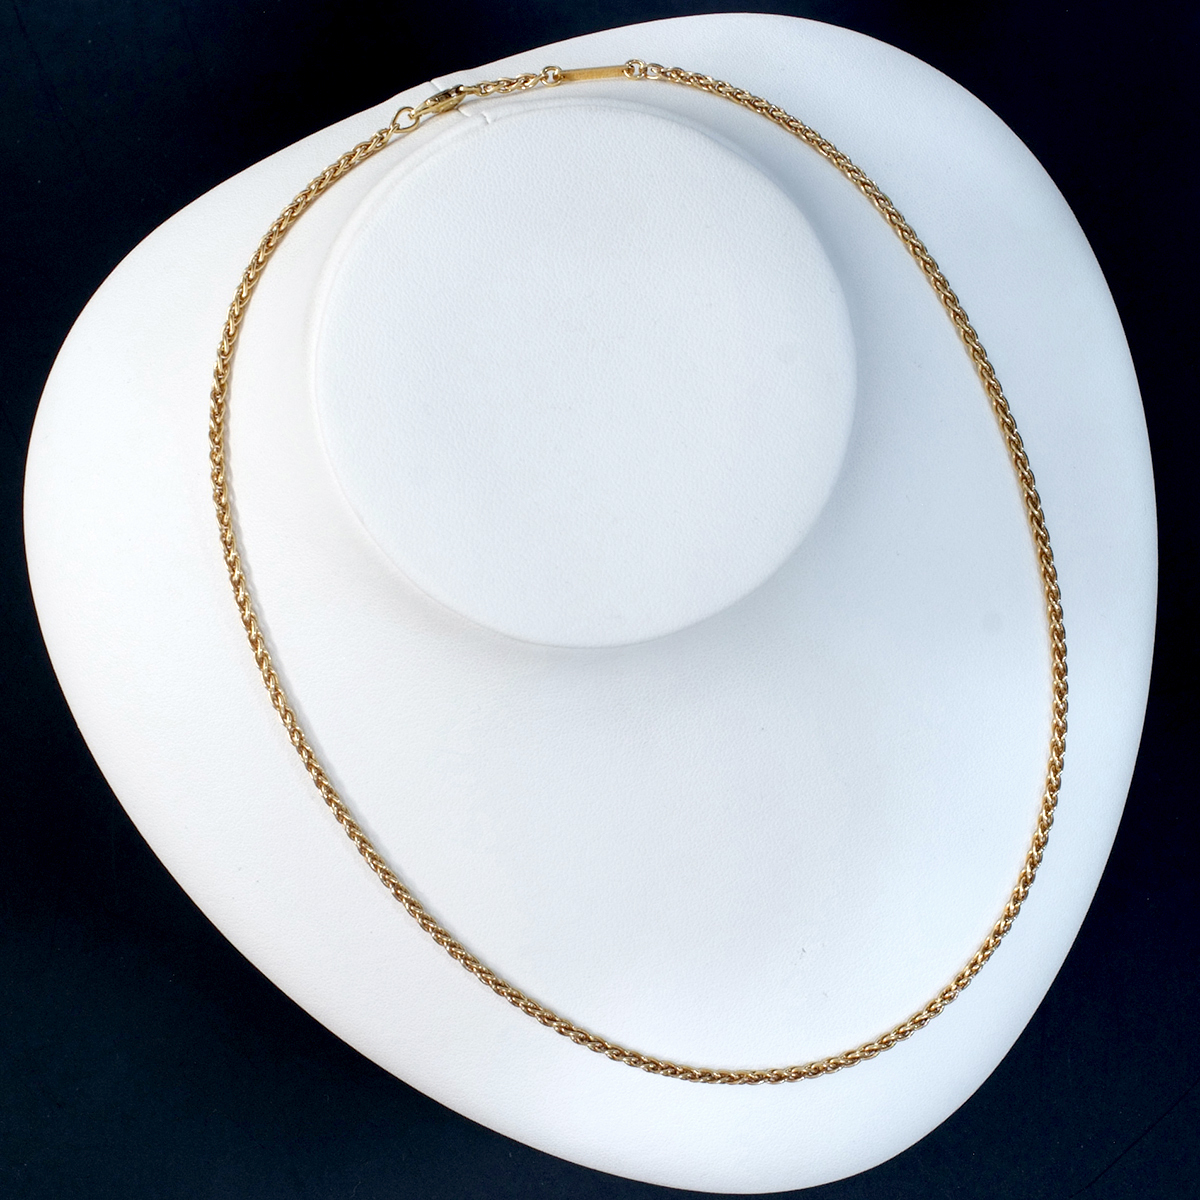 F1558[Cartier] Cartier chain top class 18 pure gold necklace length 42cm weight 11.19g width 2.3mm